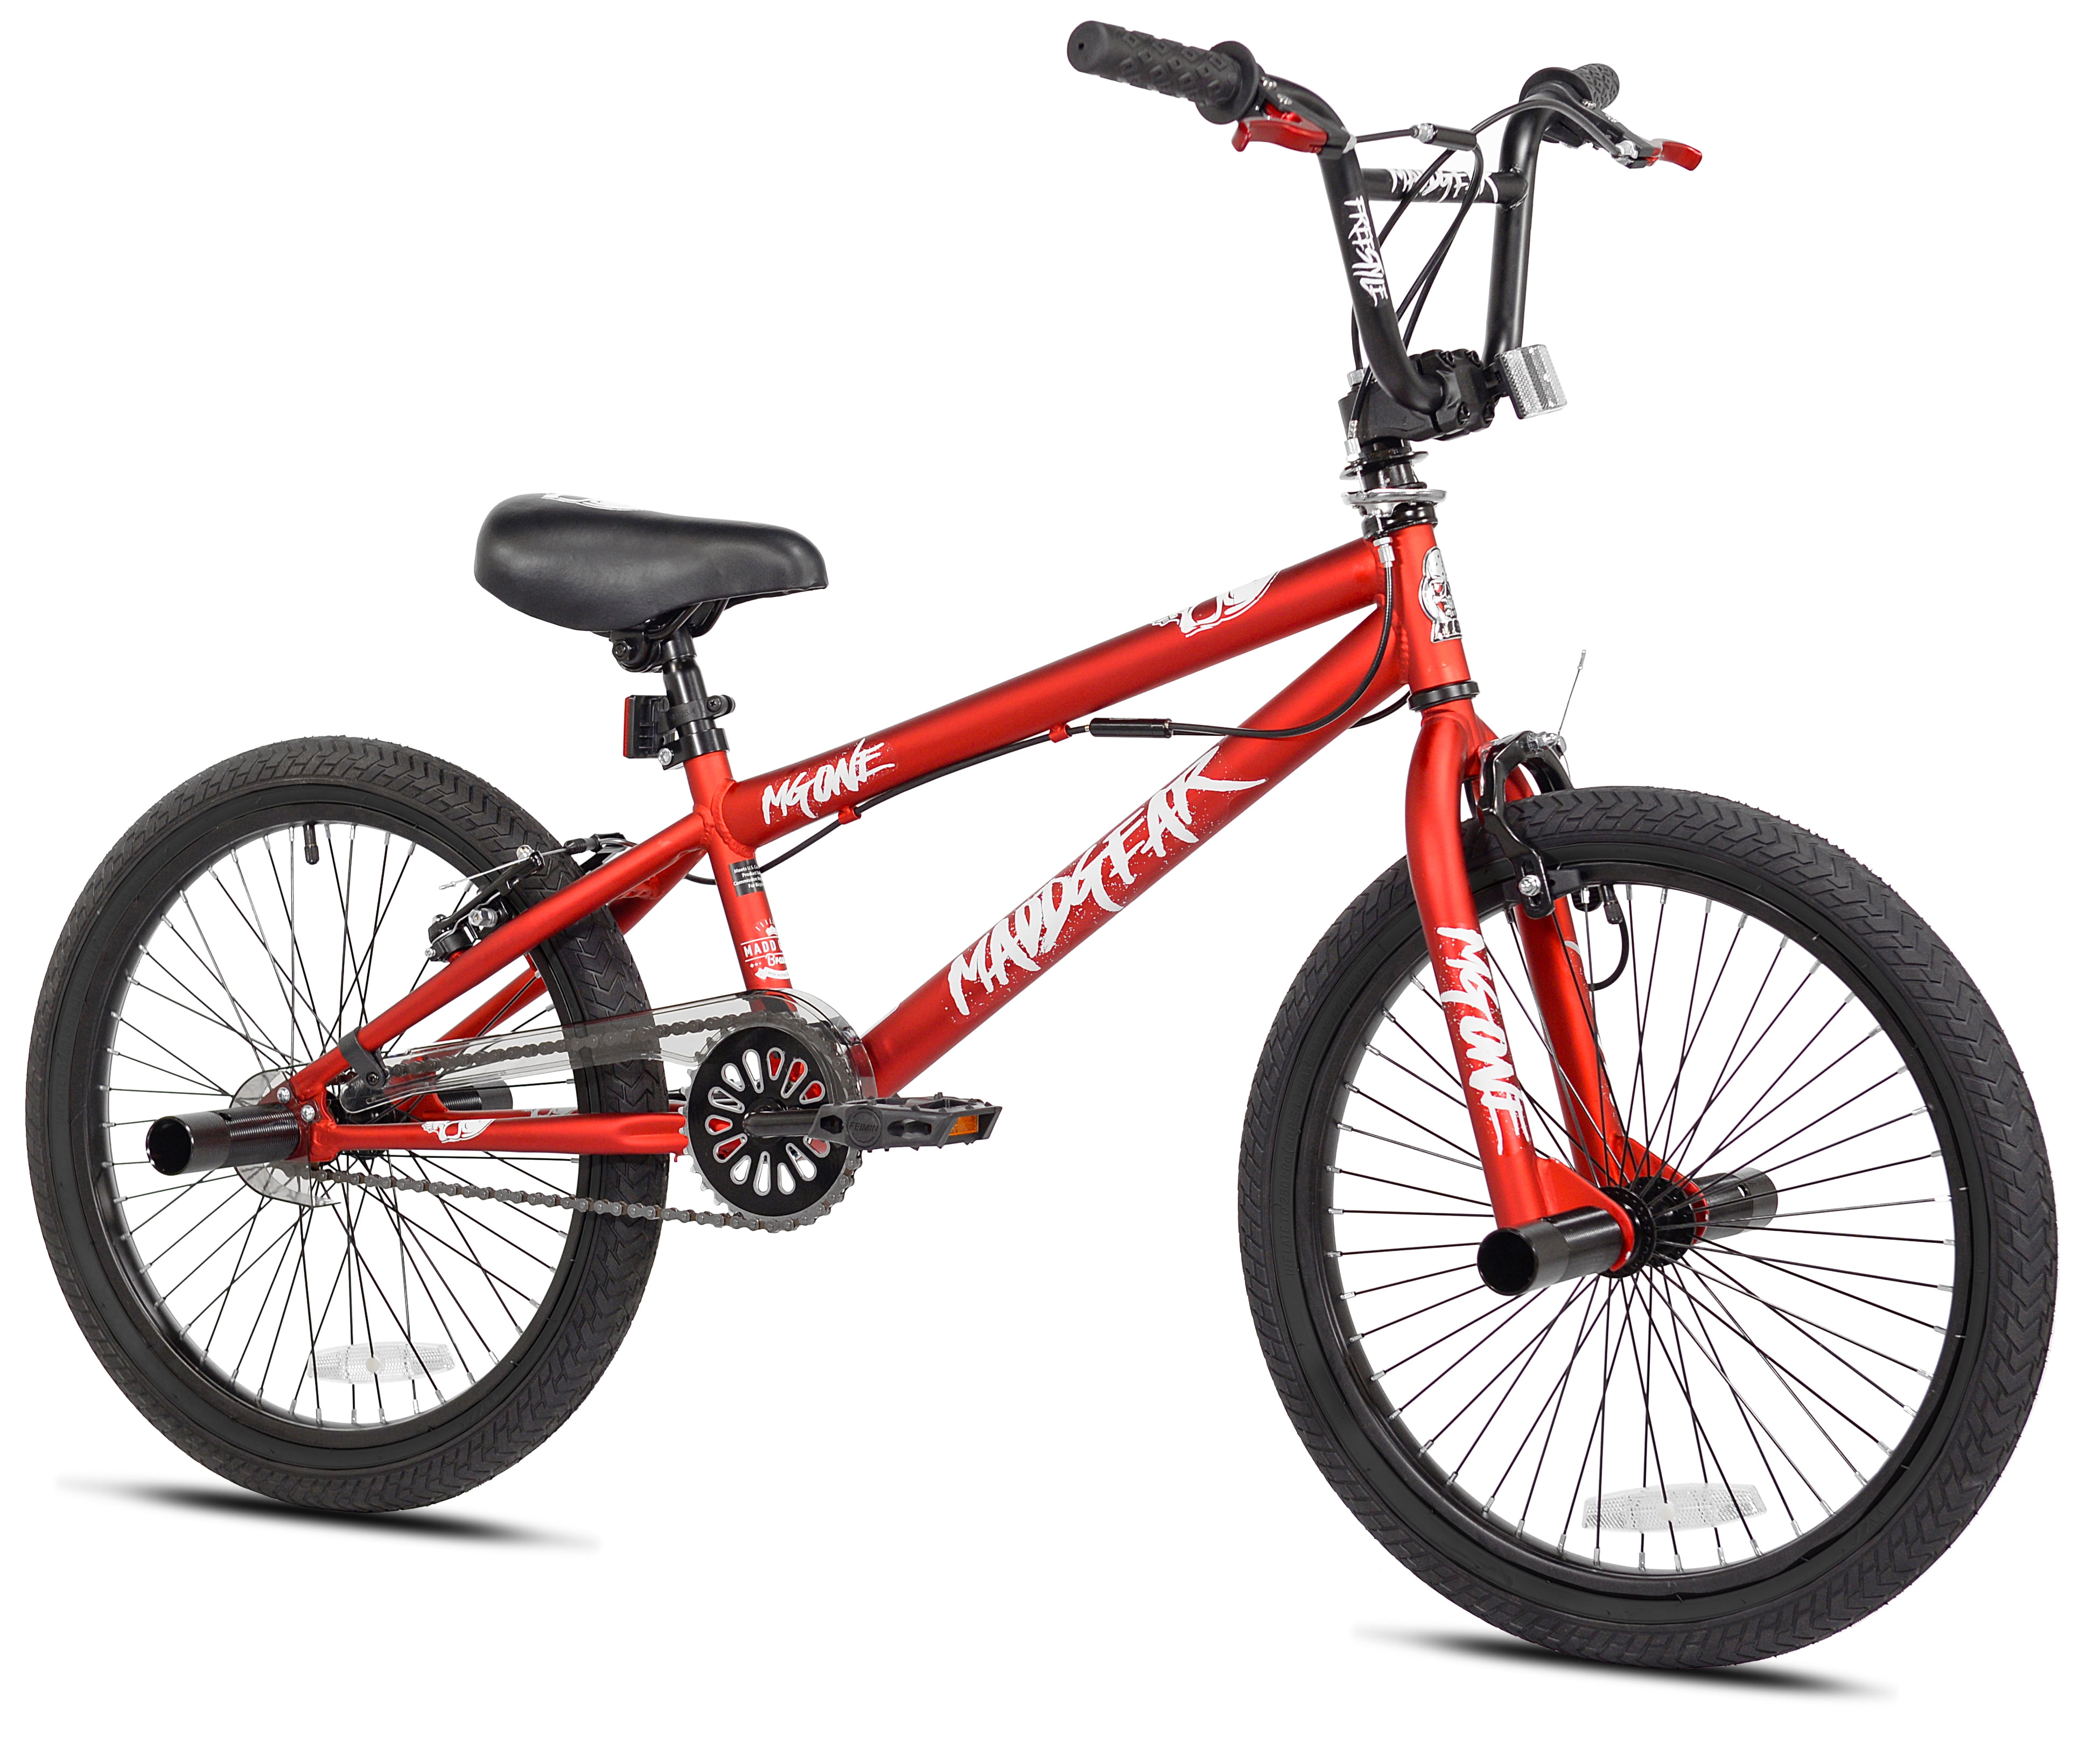 Reizende handelaar hersenen schuld Madd Gear 20" Freestyle BMX Boy's Bike, Red - Walmart.com